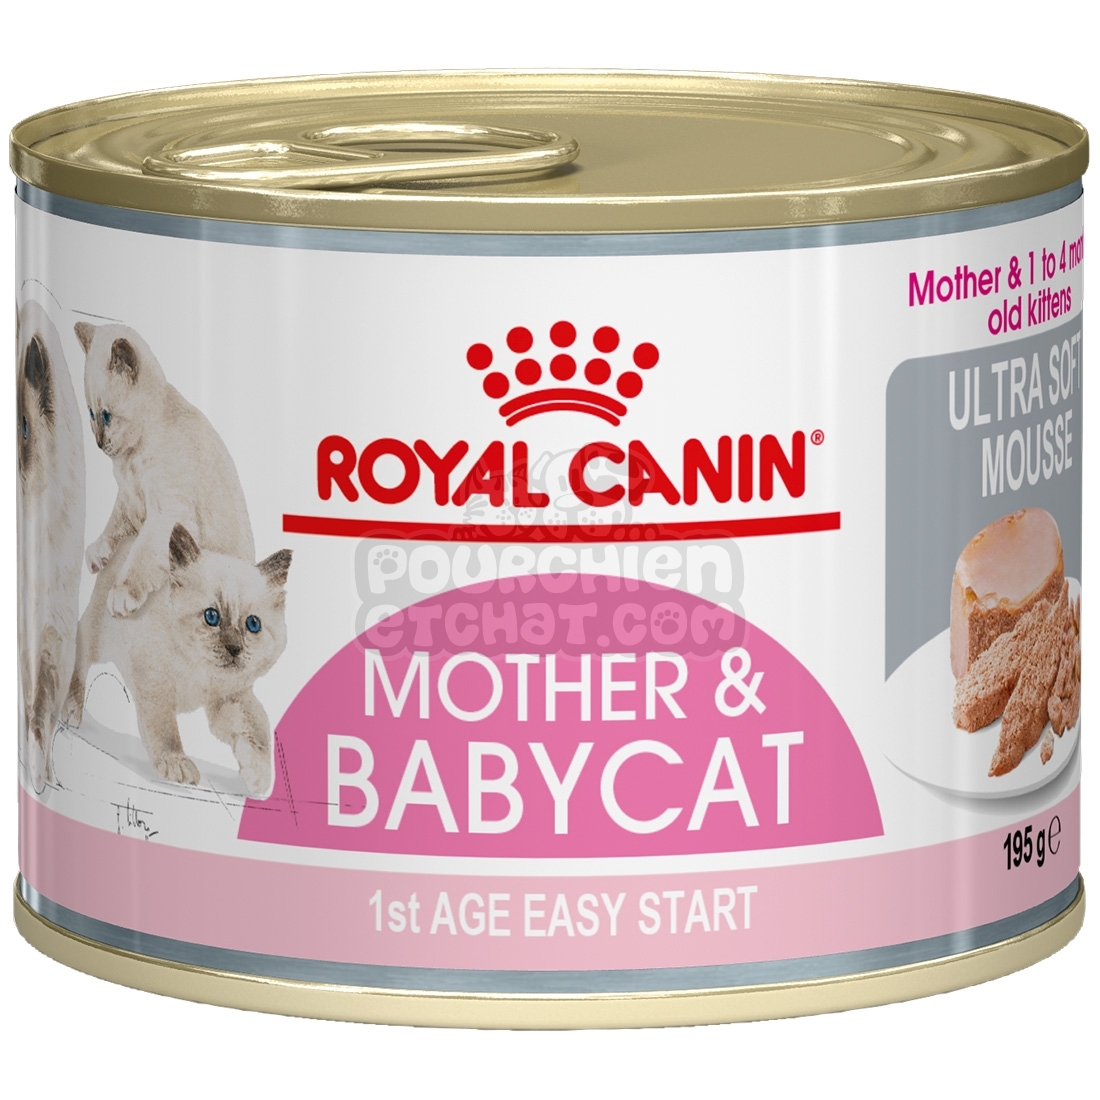 Royal Canin barquette Baby Cat Instinctive. Aliments pour chats et chatons,  Royal Canin croquettes et paté pour chat : Morin, alimentation élaborée par  les vétérinaires